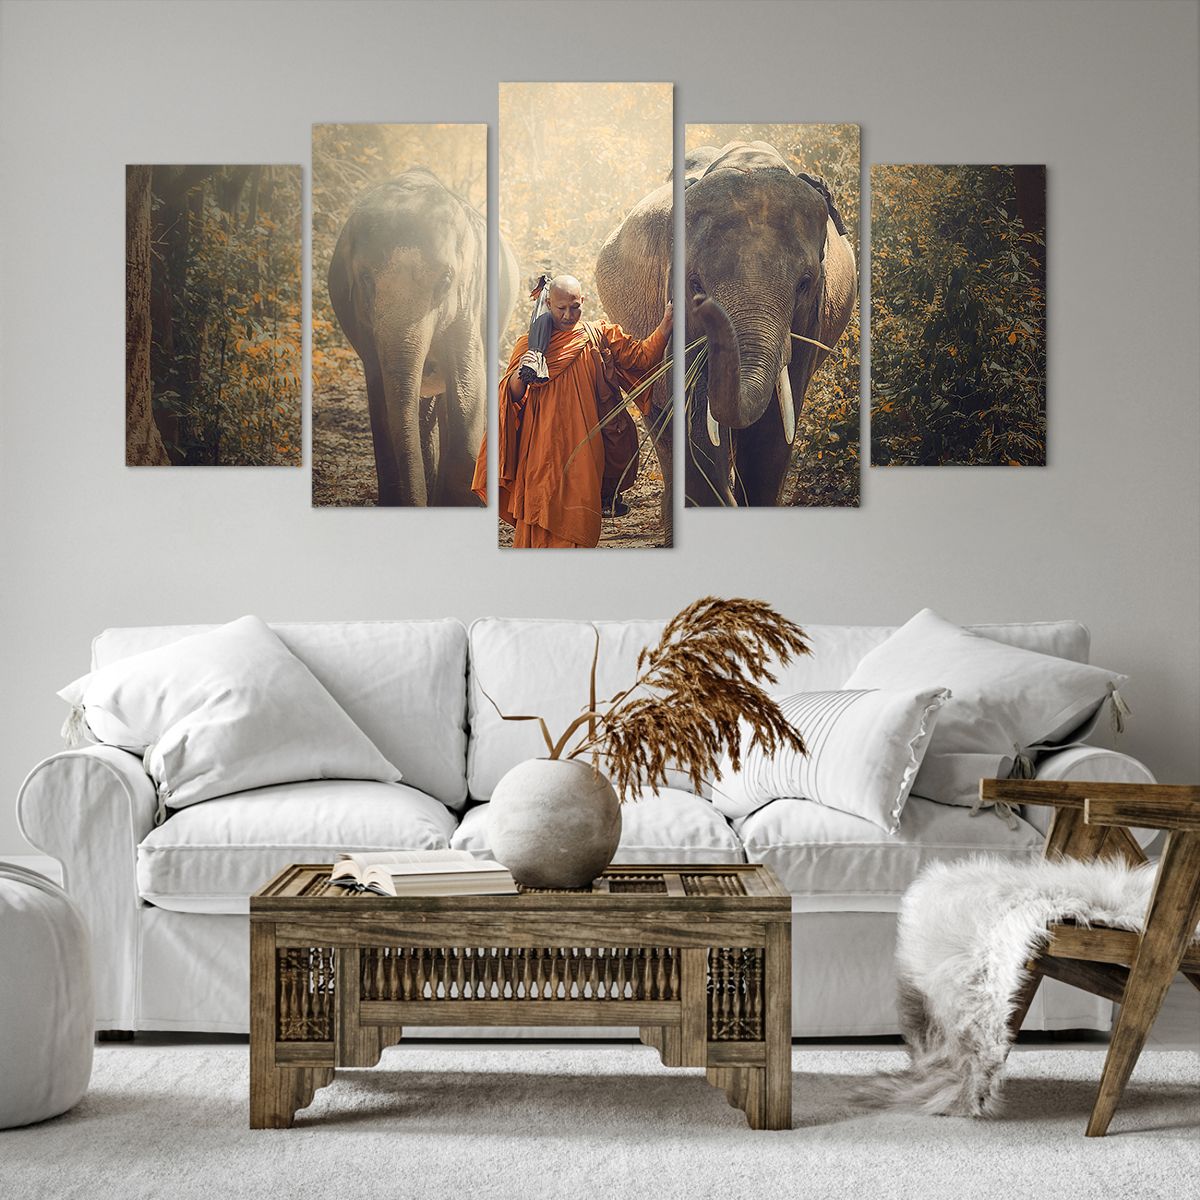 Obrazy na płótnie Azja, Obrazy na płótnie Słoń, Obrazy na płótnie Mnich, Obrazy na płótnie Dżungla, Obrazy na płótnie Buddyzm